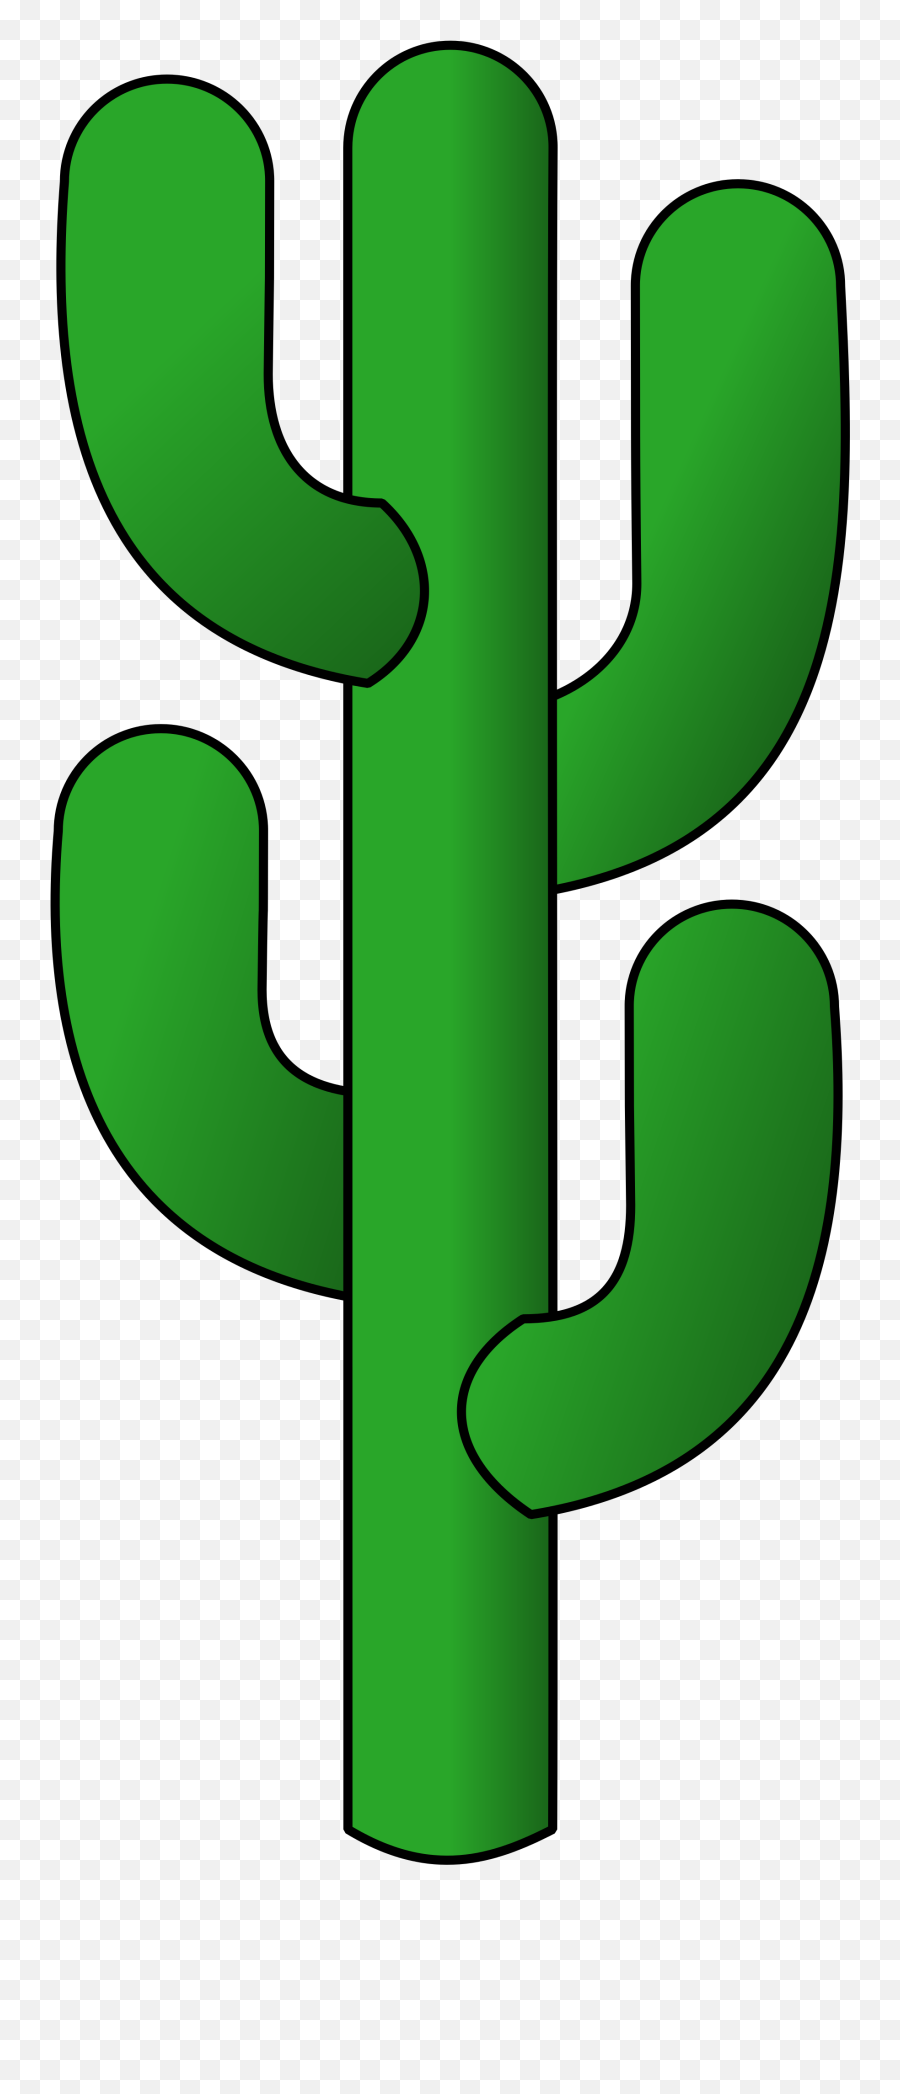 Download Cactus Svg For Free - Designlooter 2020 U200d Portable Network Graphics Emoji,Cameleon Emoji